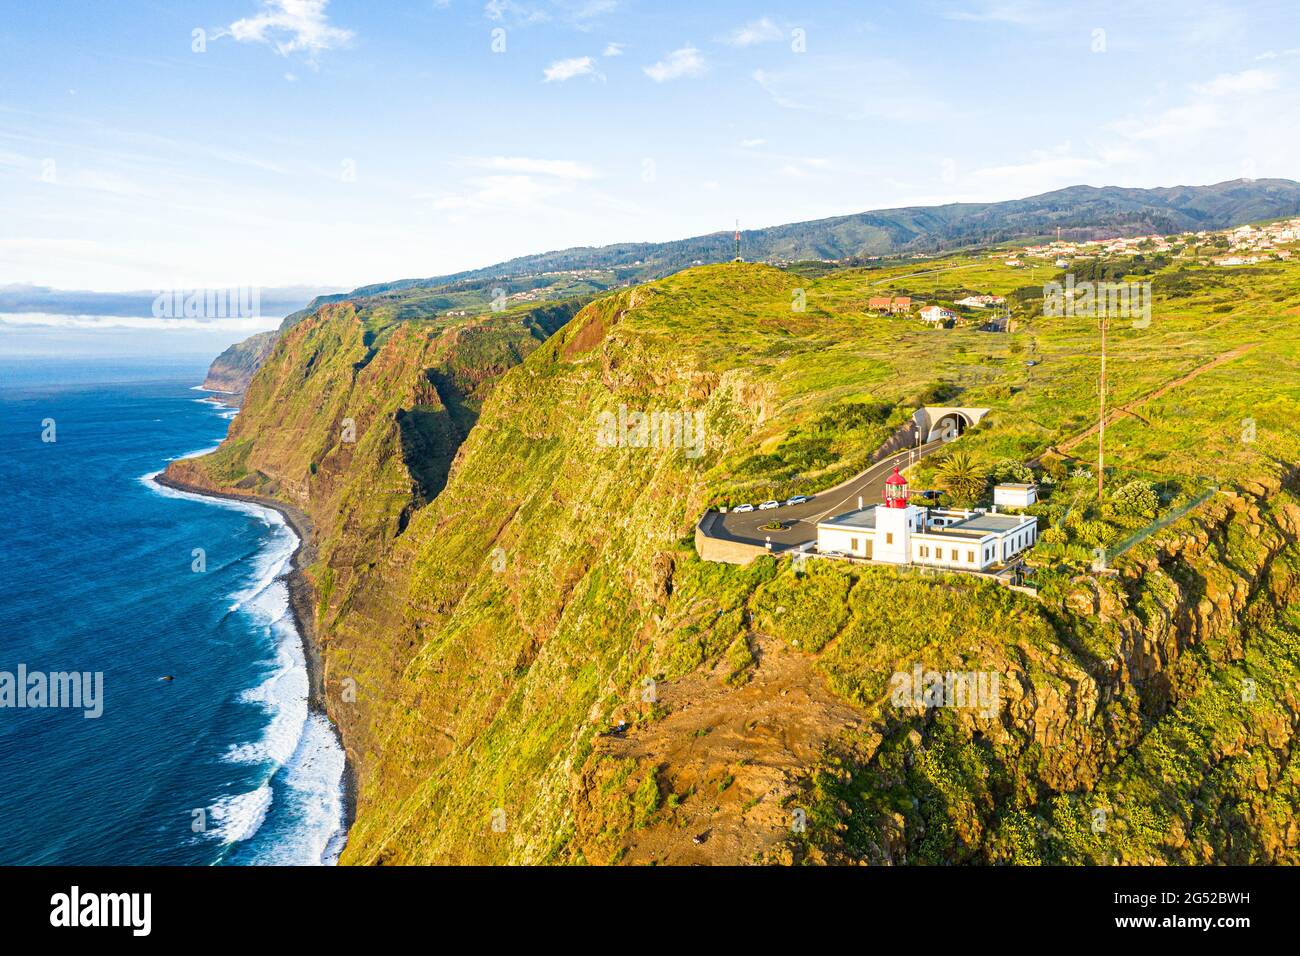 Phare de Ponta do Pargo sur des falaises abruptes surplombant l'océan, Calheta, île de Madère, Portugal Banque D'Images